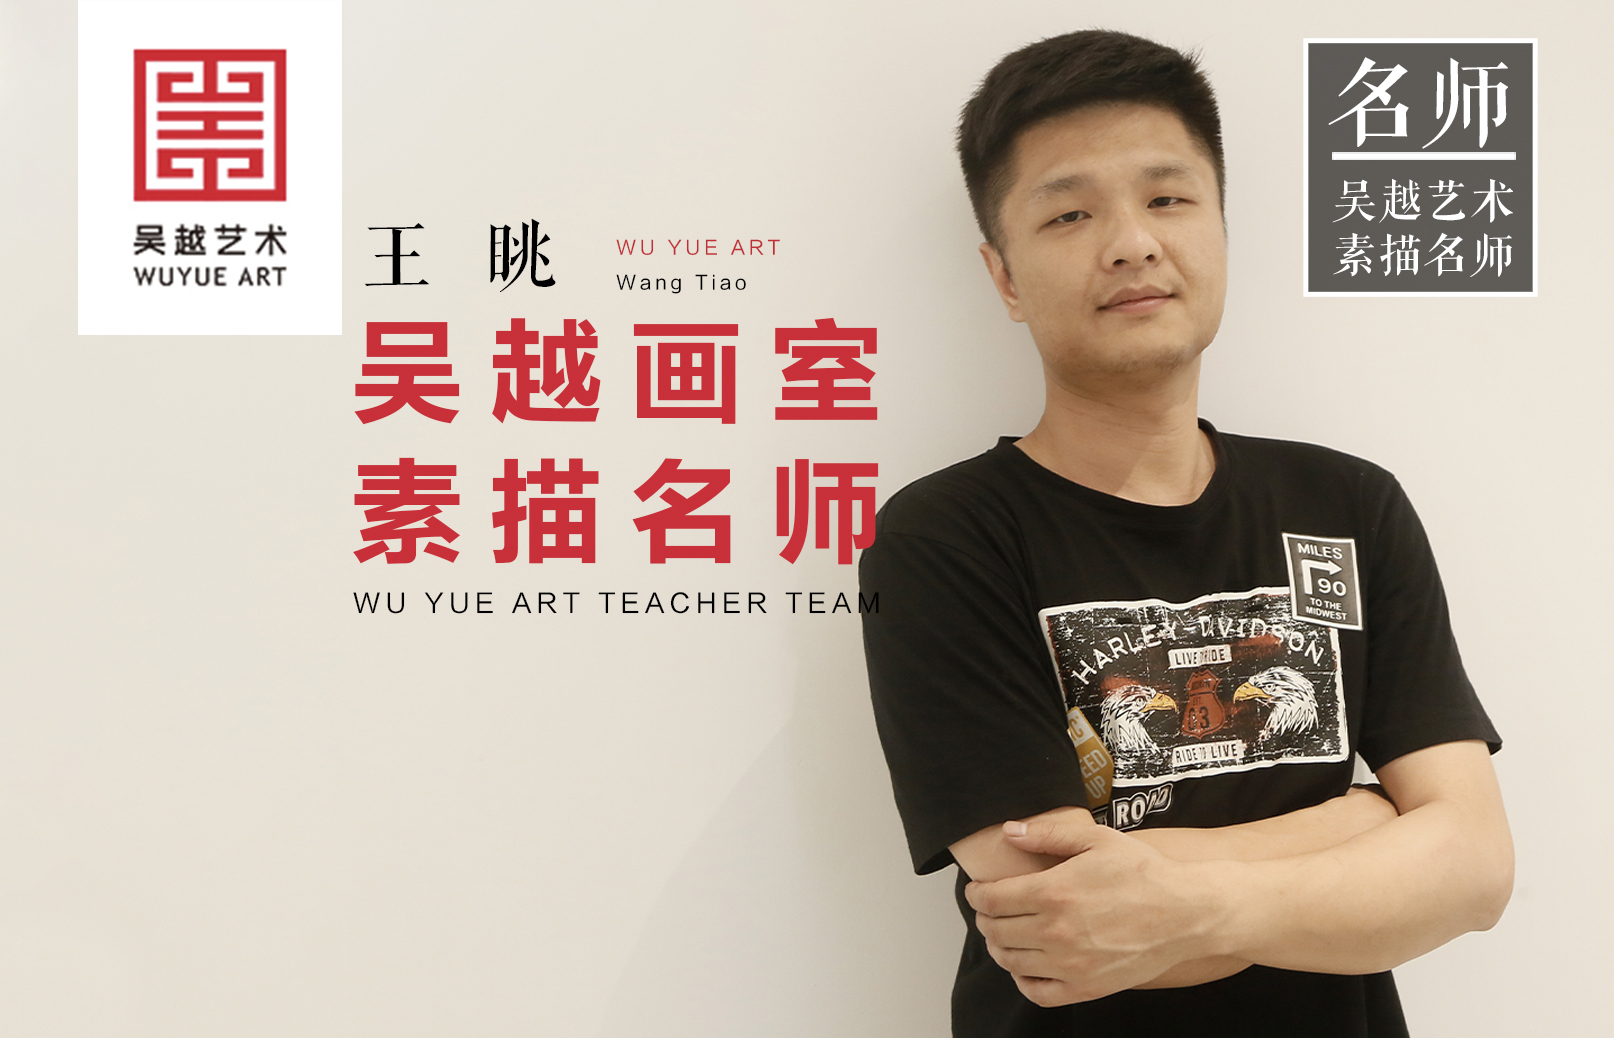 吴越名师 | 王眺：从事教育行业八年的他兼具使命感与责任感，注重和学生的交